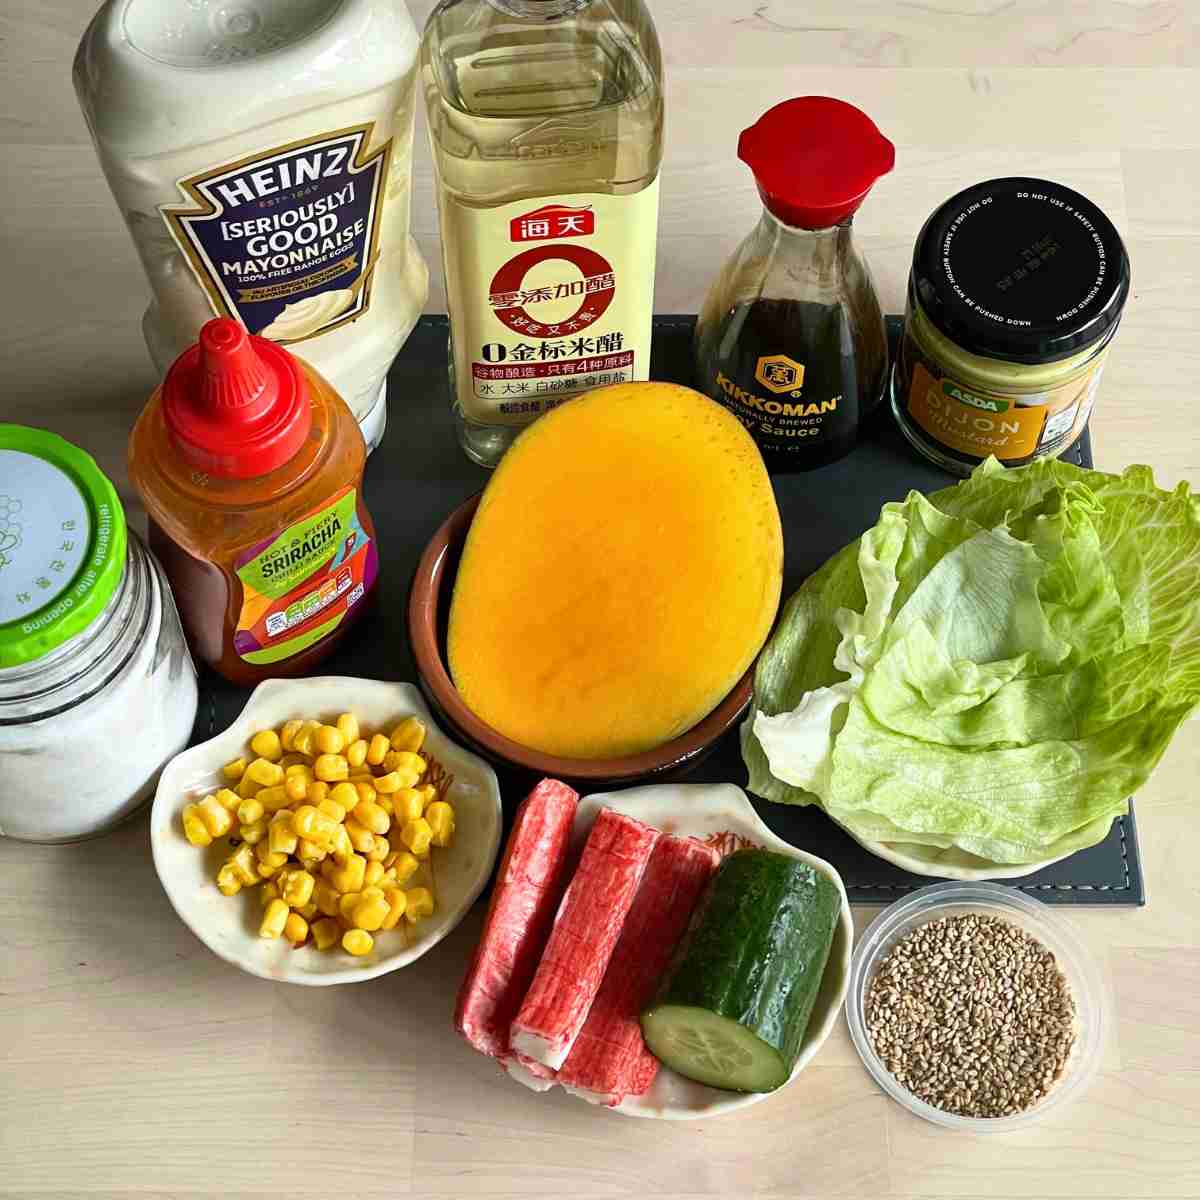 Kani salad ingredients